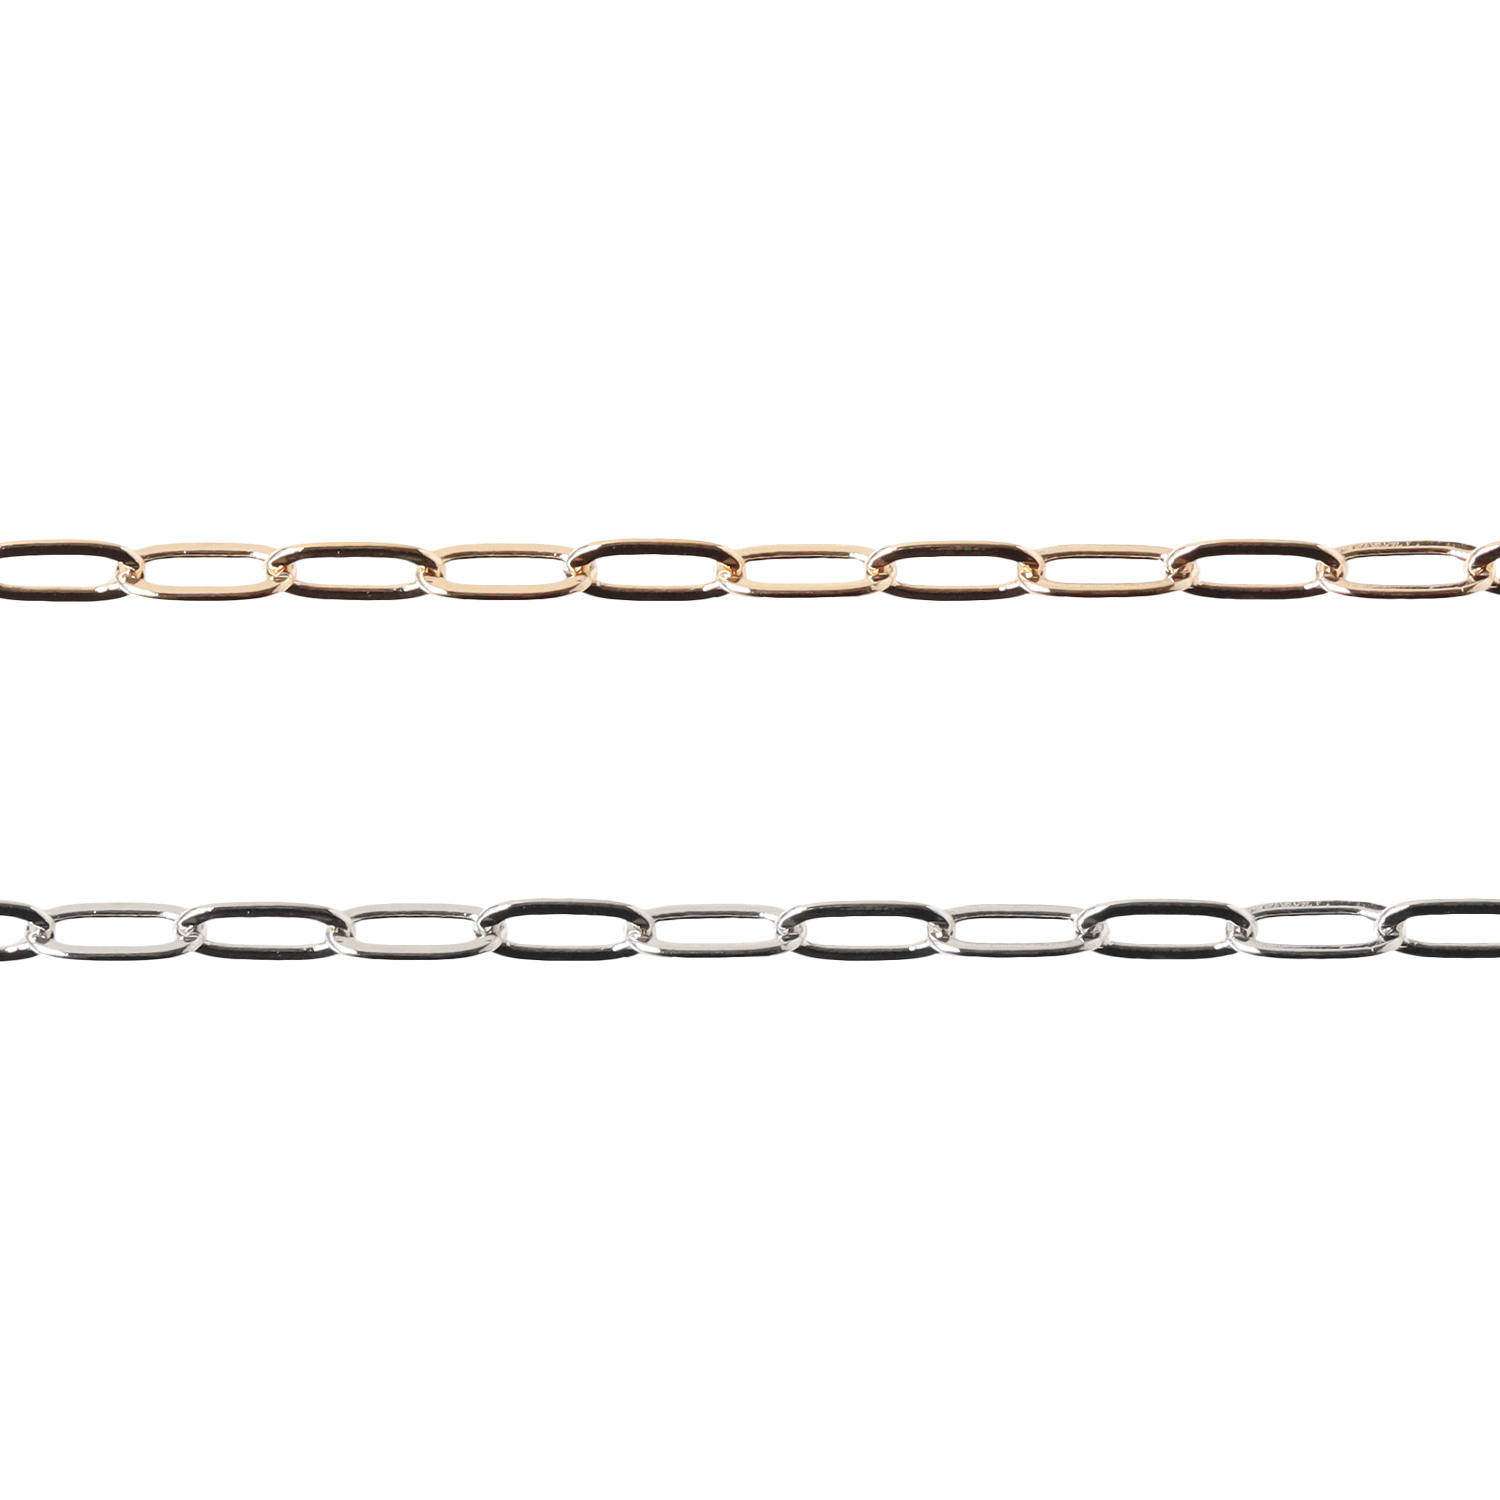 KH130～131 Chain (m)